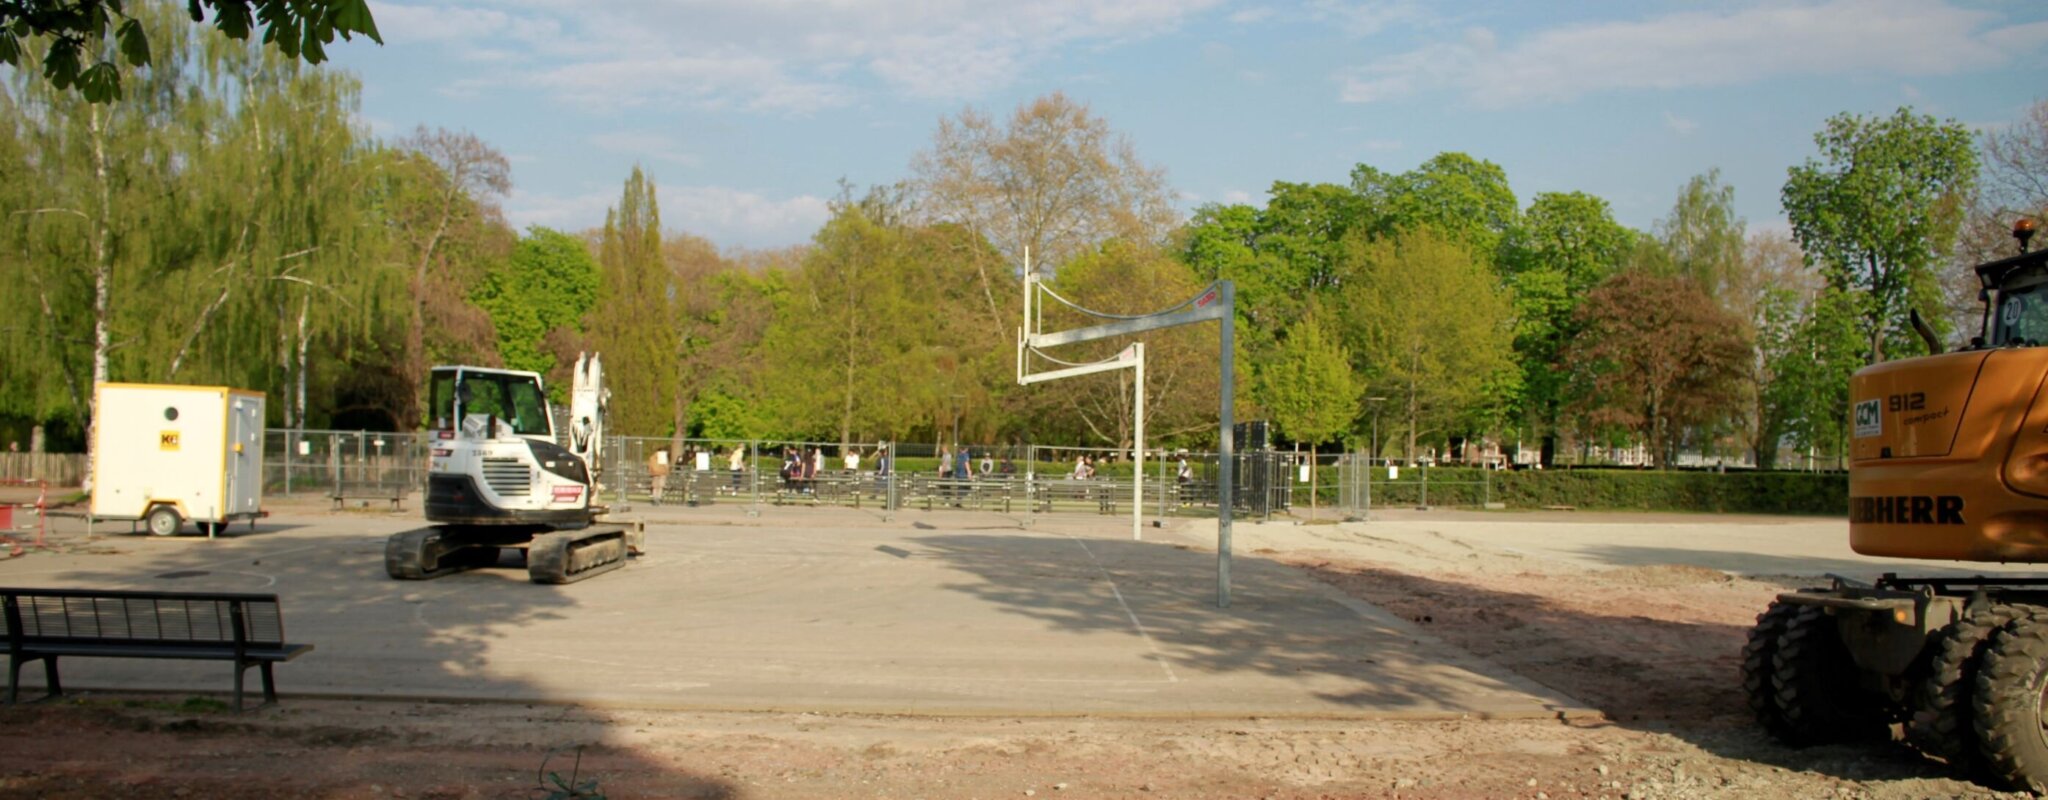 Parkour, skatepark et biergarten : les nouvelles ambitions de la Ville pour le parc et  la Halle Citadelle